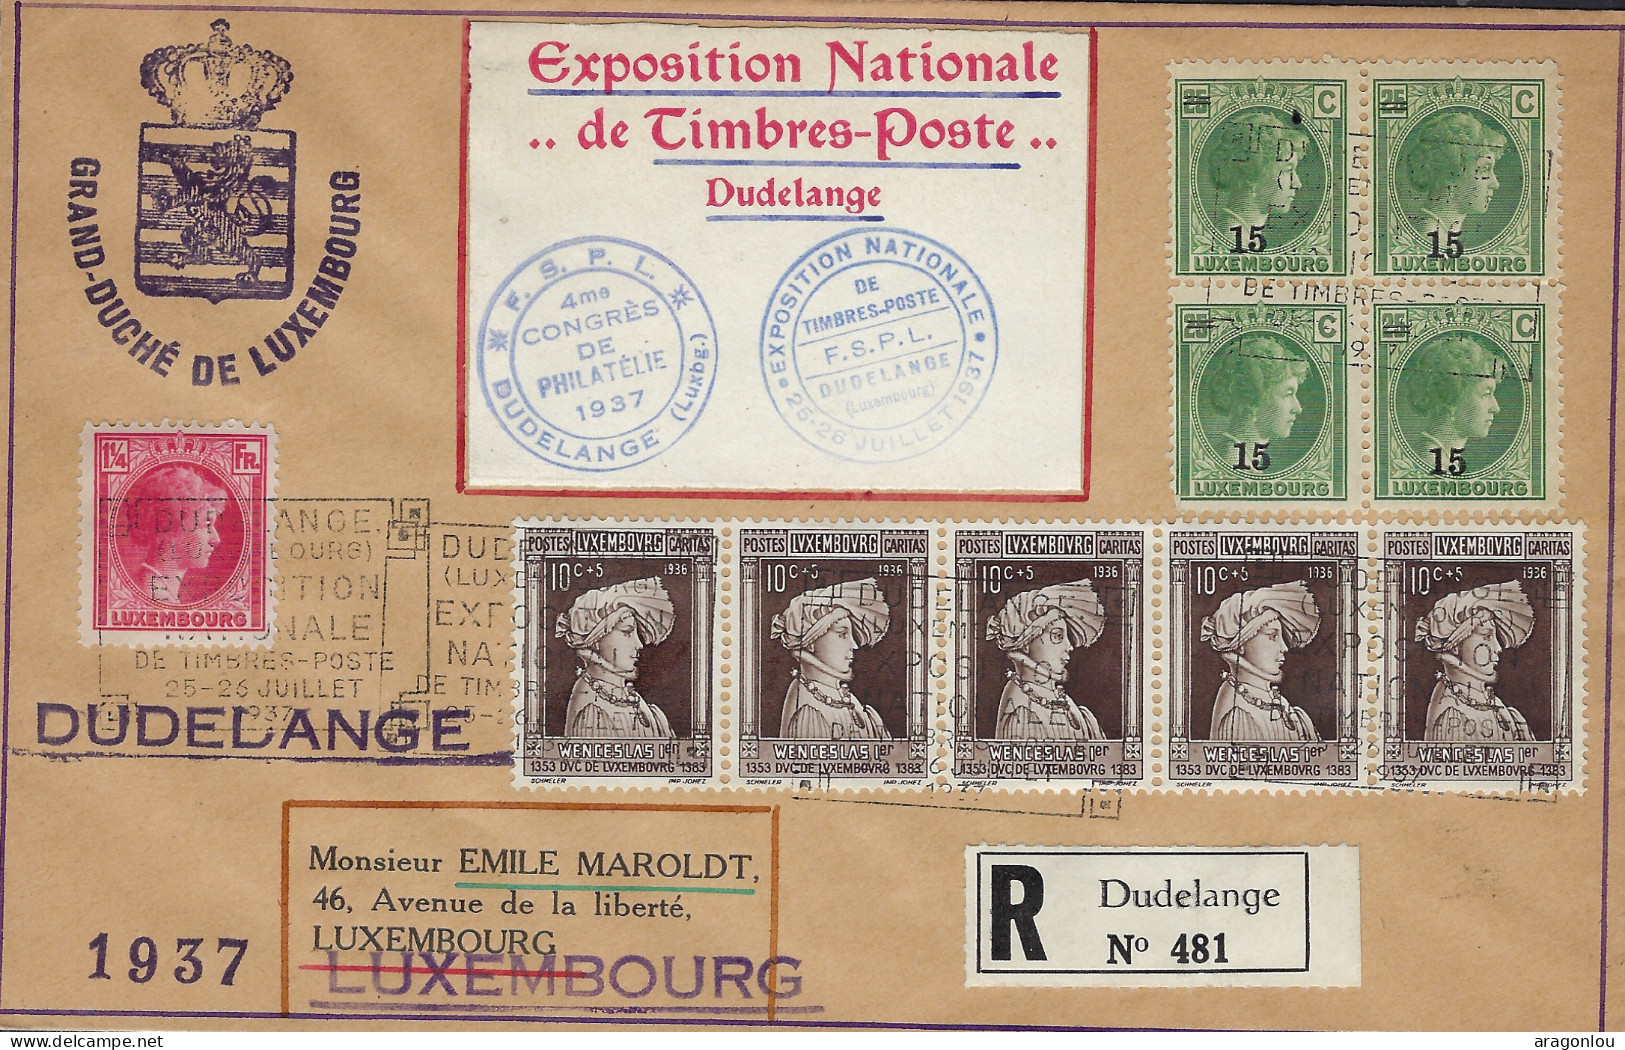 Luxembourg - Luxemburg - Lettre  Recommandé 1938  Adressé Au Mr  Emile Maroldt , Luxembourg - Lettres & Documents